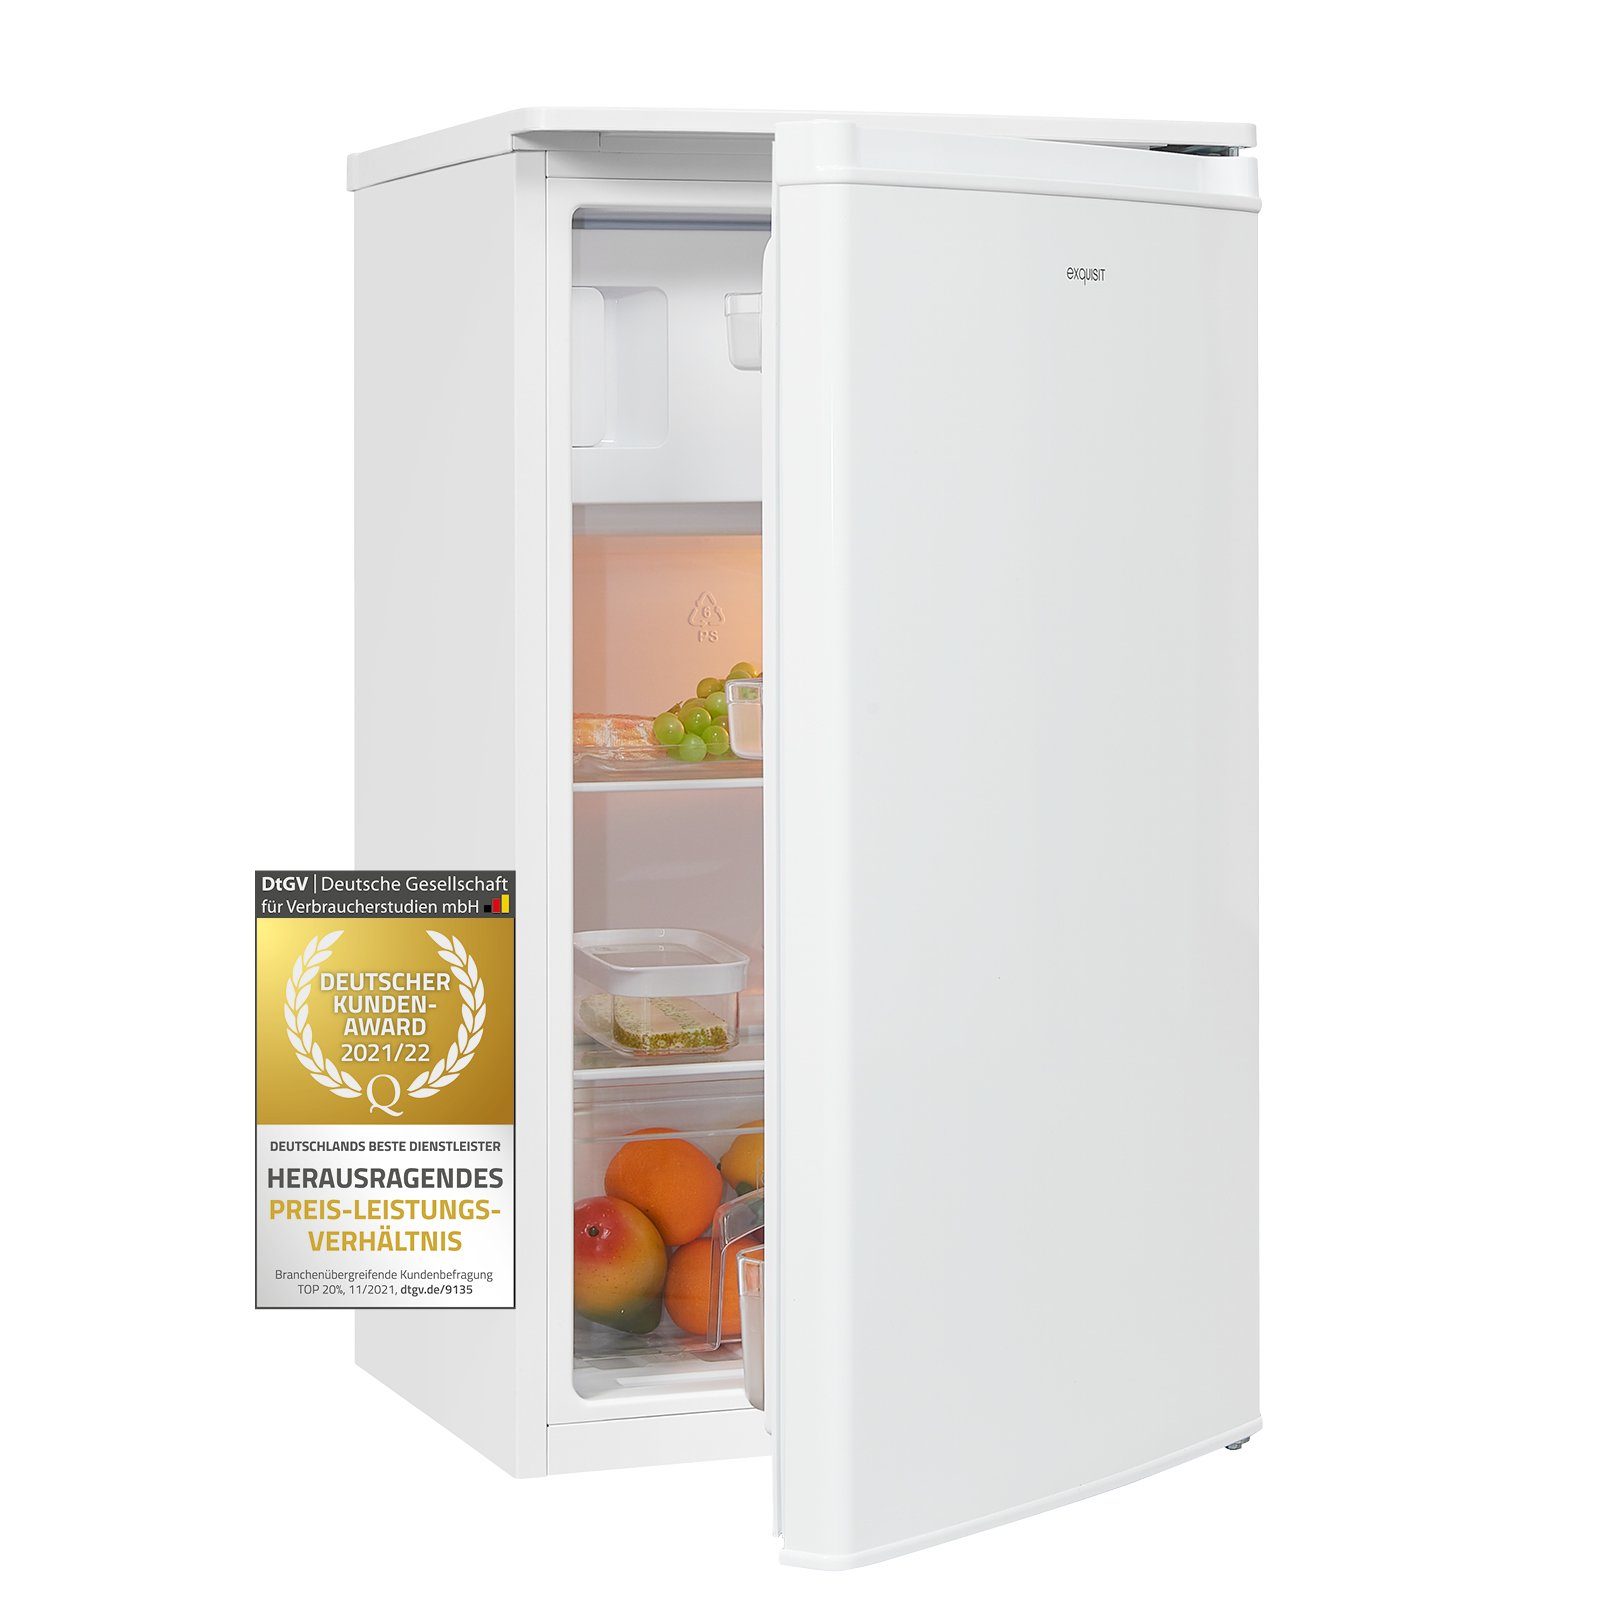 exquisit Kühlschrank KS117-3-040E weiss, 85 cm hoch, 48 cm breit,  platzsparend und effizient, ideal für den kleinen Haushalt